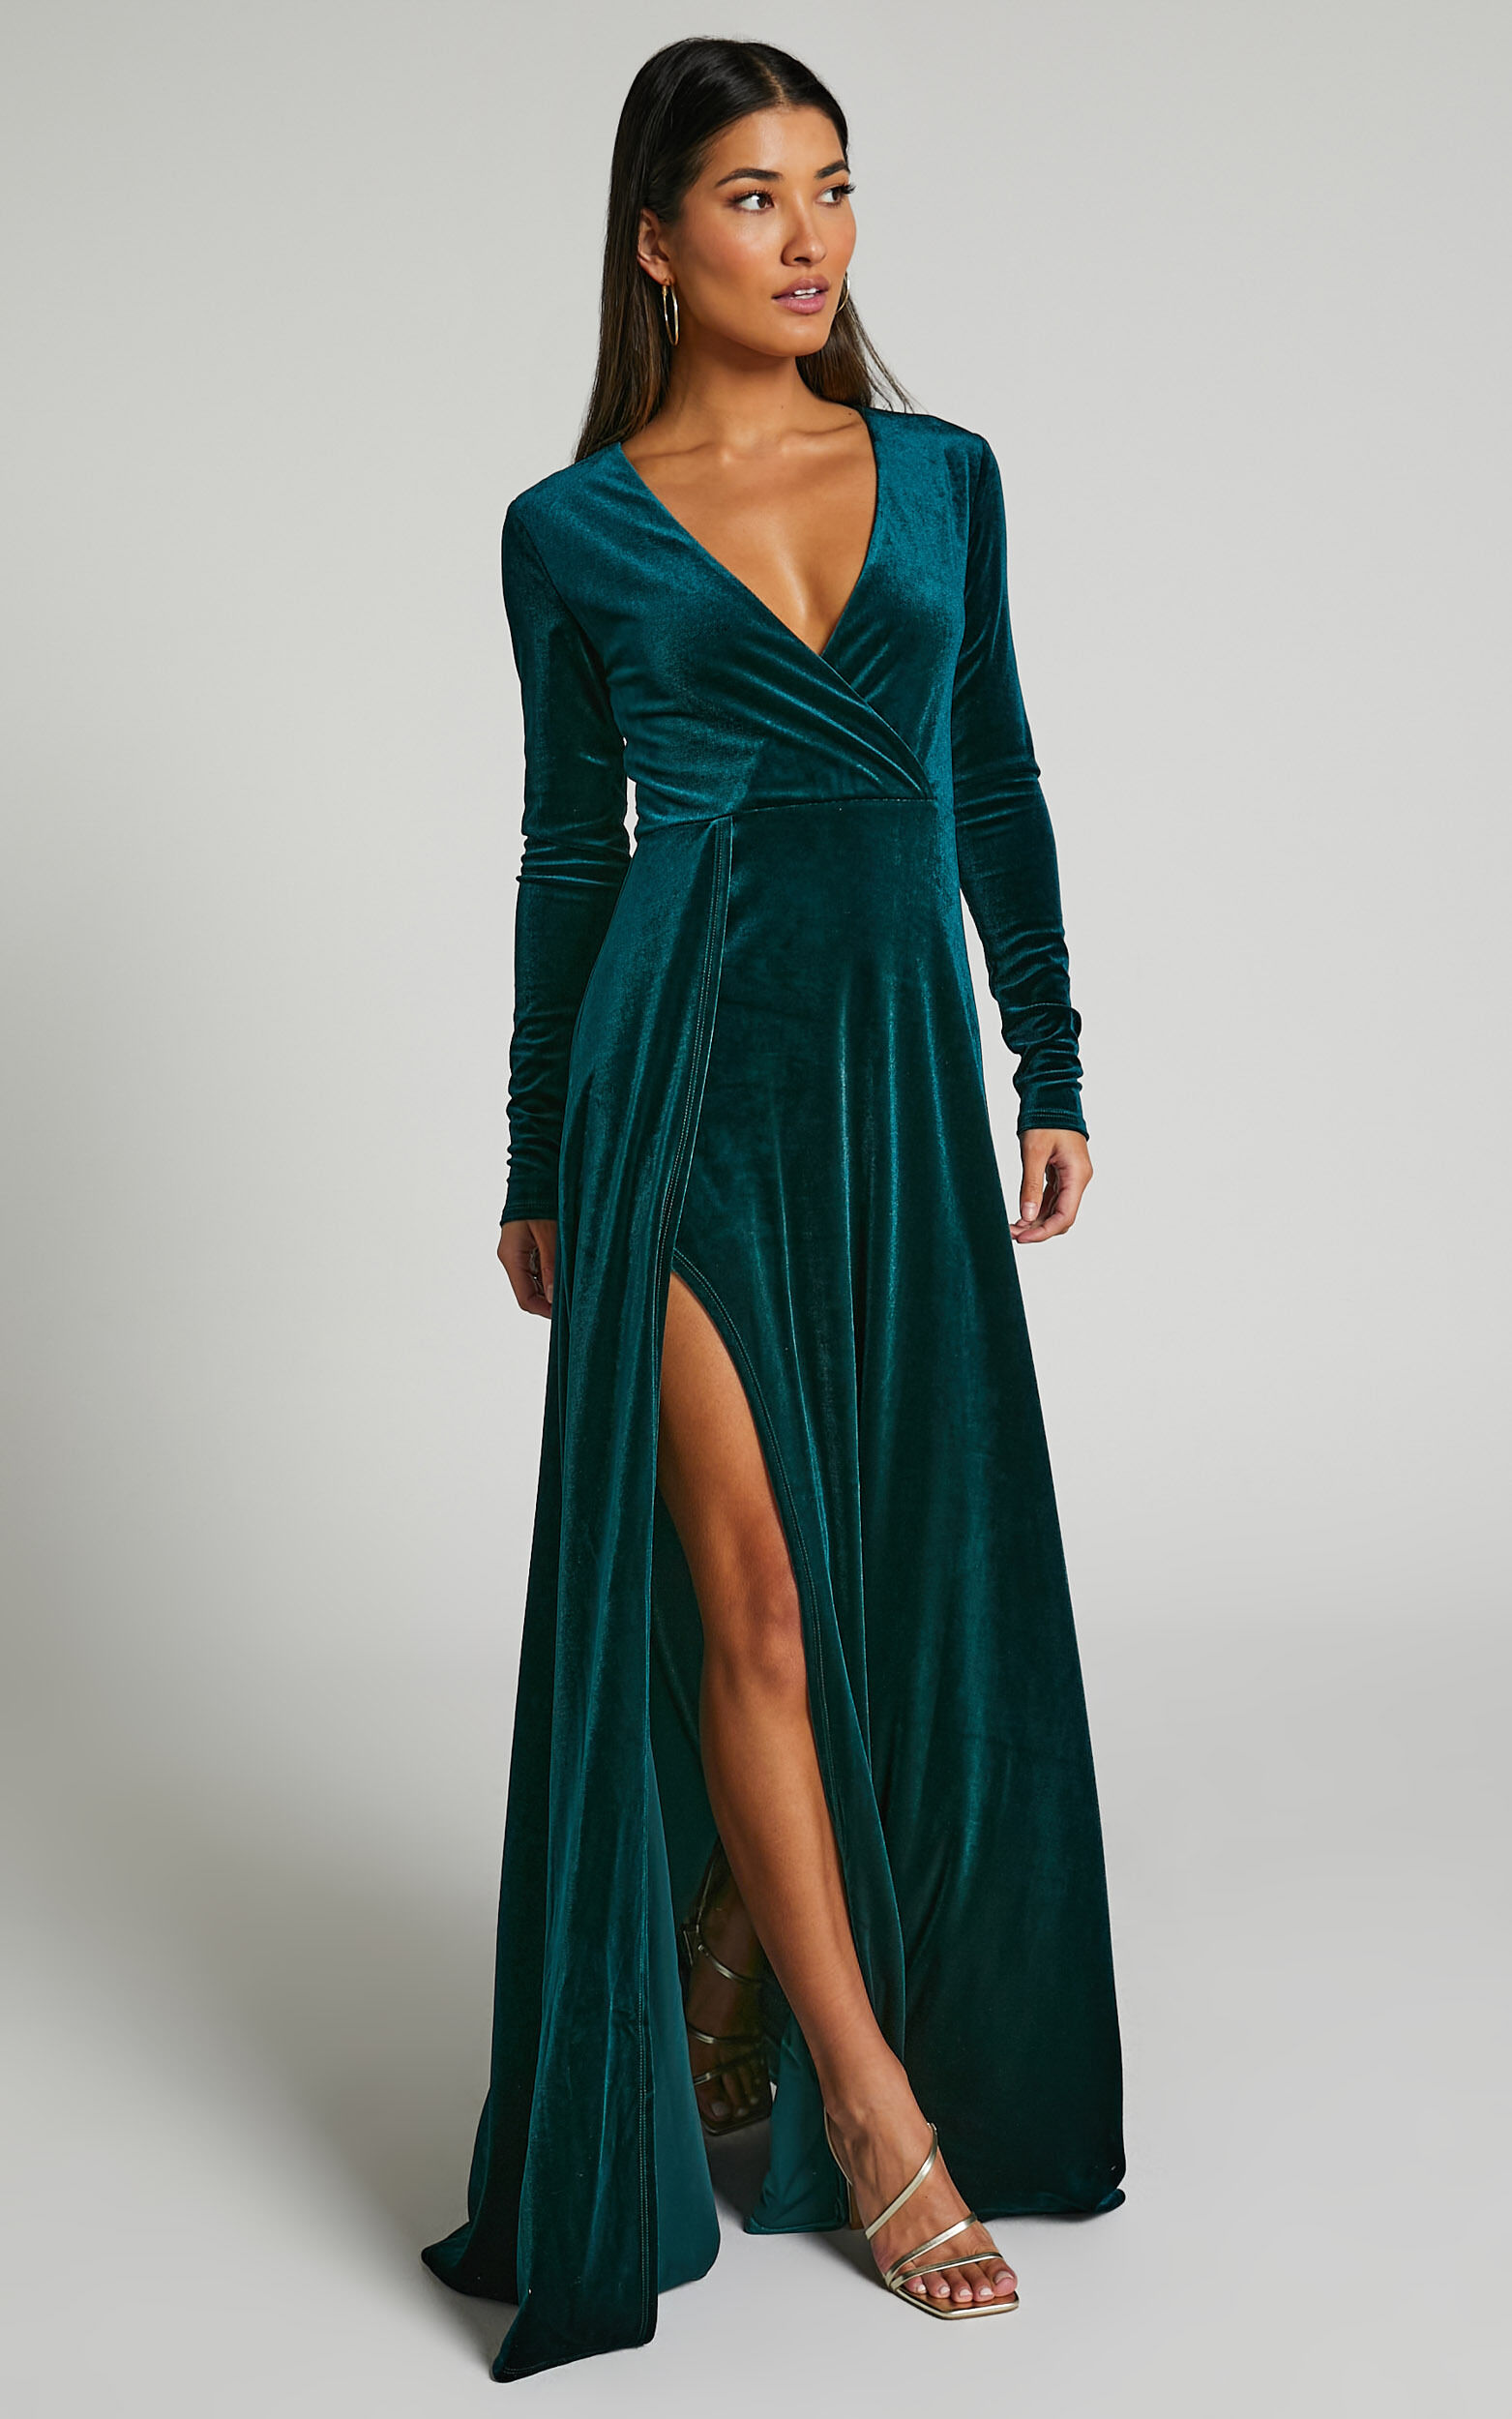 Sloane Maxi Dress - Long Sleeve Wrap Dress in Emerald - 04, GRN1